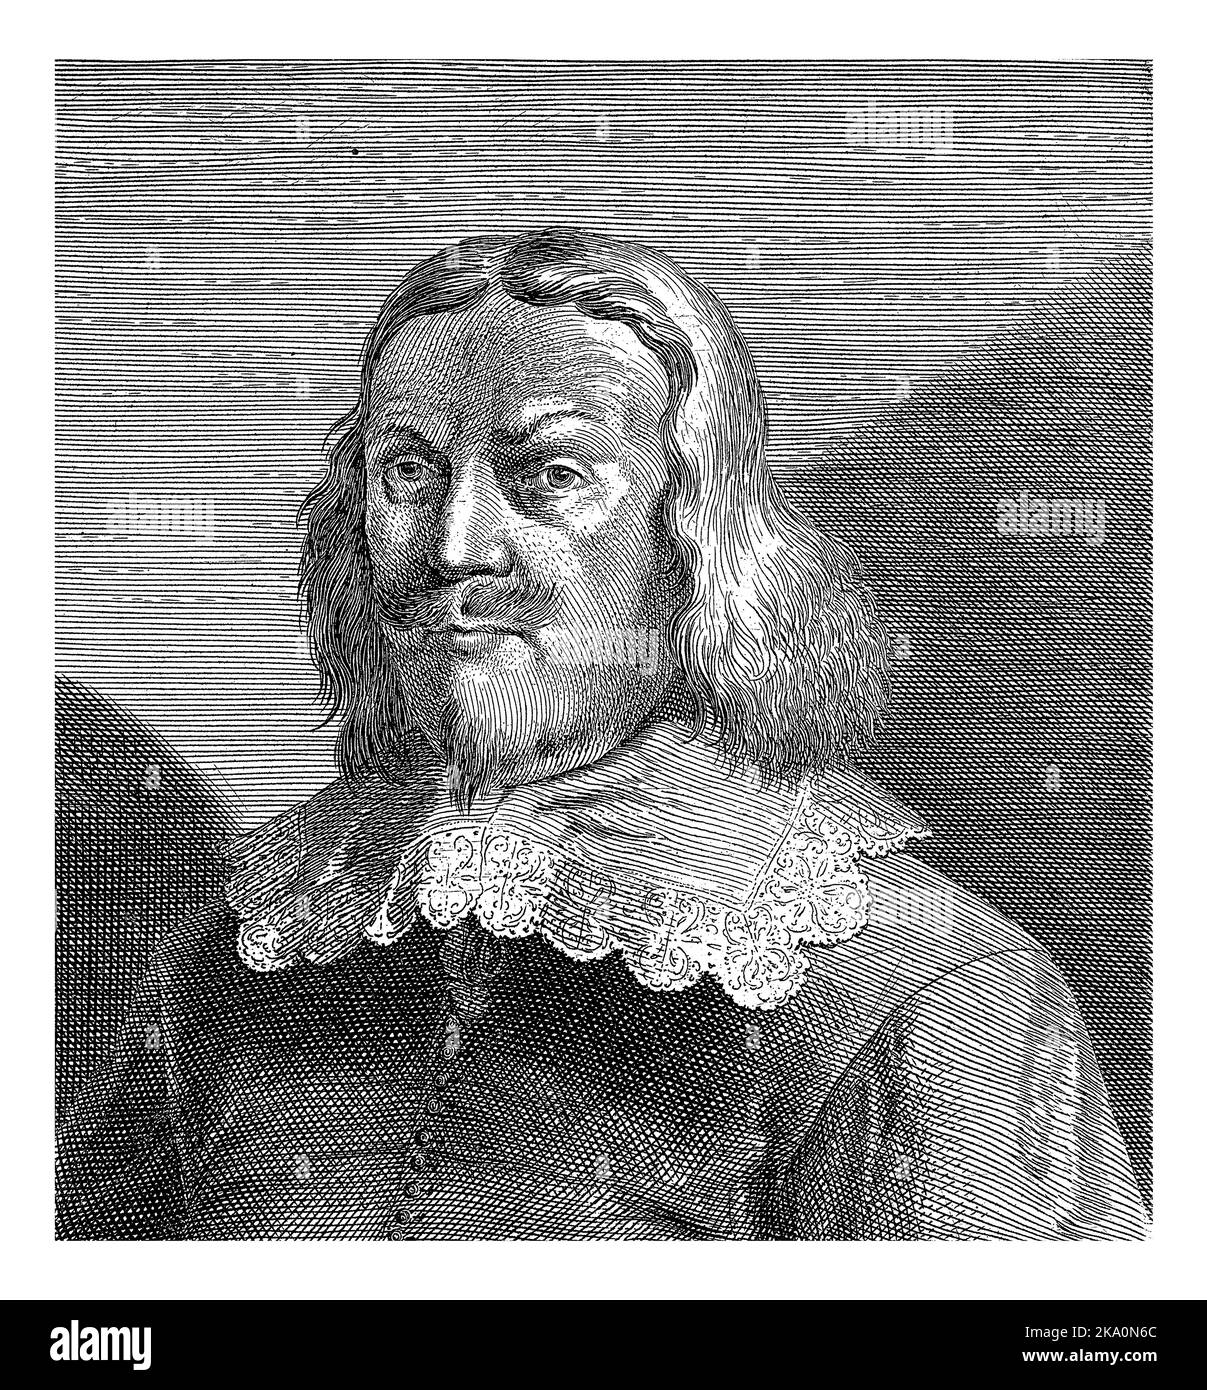 Porträt des schwedischen Diplomaten Johan Adler Salvius. Büste nach rechts. Am unteren Rand des Randes befindet sich ein sechszeiliger Text in lateinischer Sprache. Stockfoto